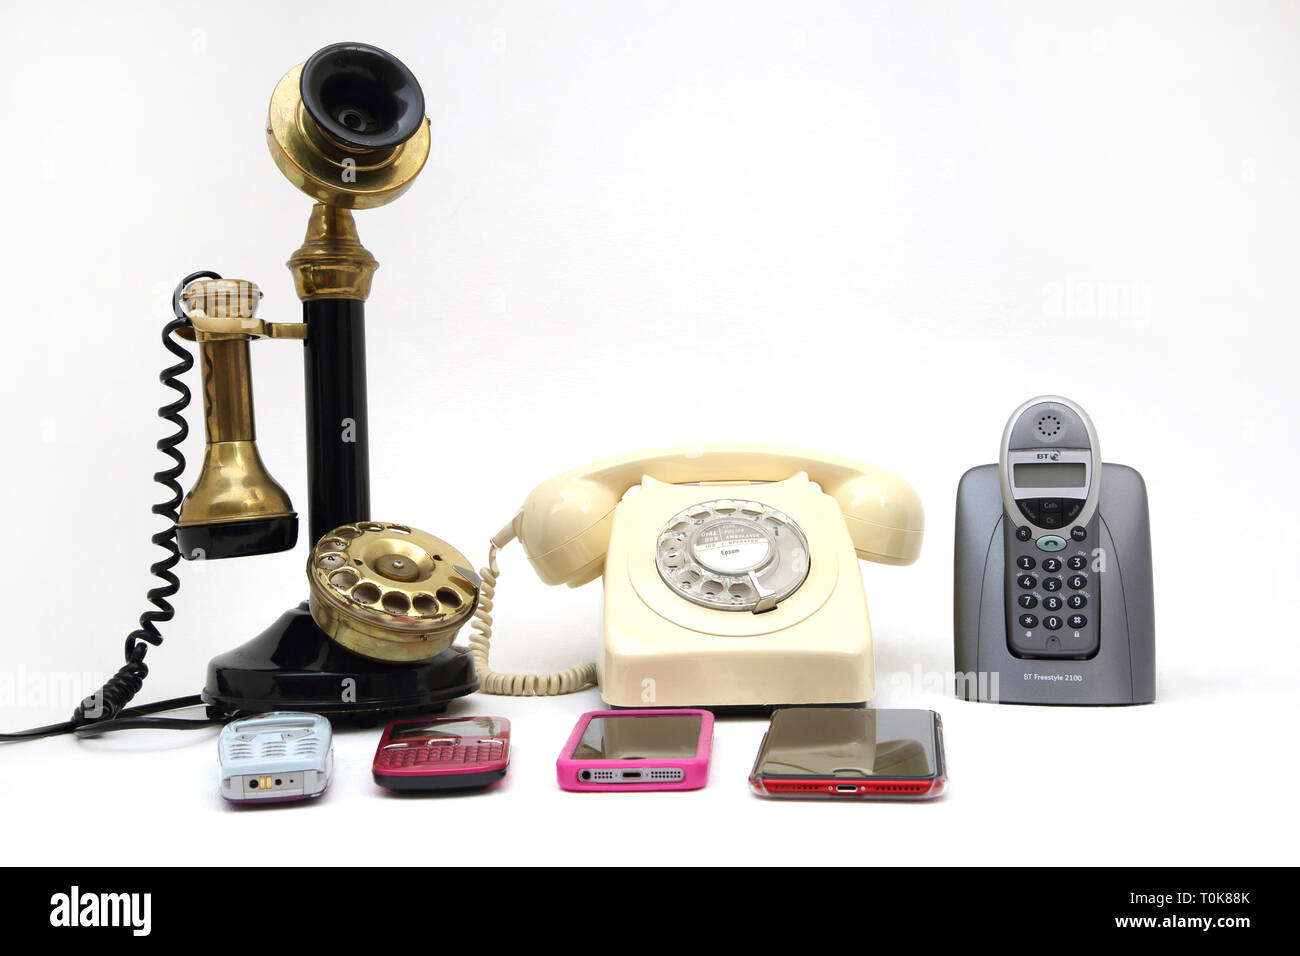 Eine Sammlung von Telefonen, die Alten und Neuen - Leuchter Telefon, Drehschalter Telefon, schnurloses Telefon und Handys - Nokia 3310, Nokia C3, iPhone 5 Stockfoto